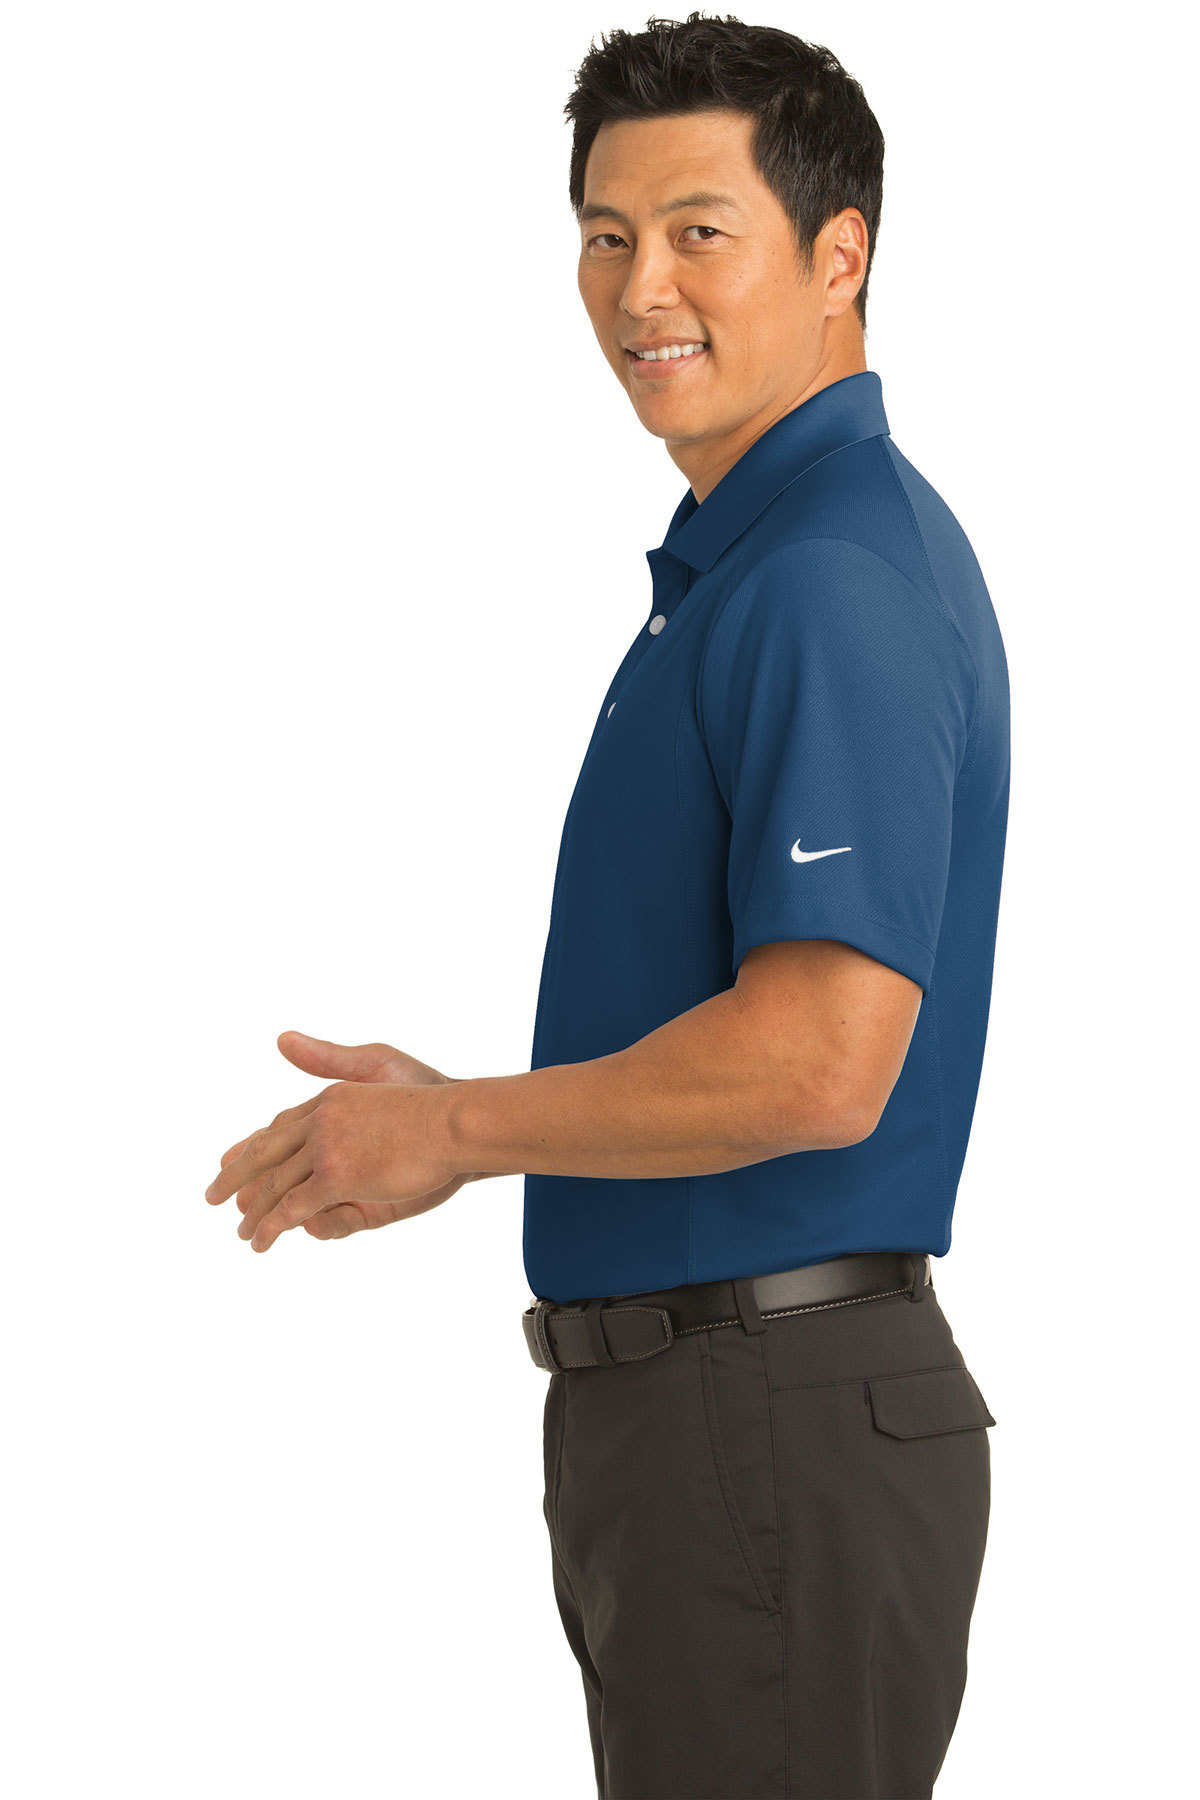 Nike Golf 286772 Ladies Dri-FIT Classic Polo Shirts